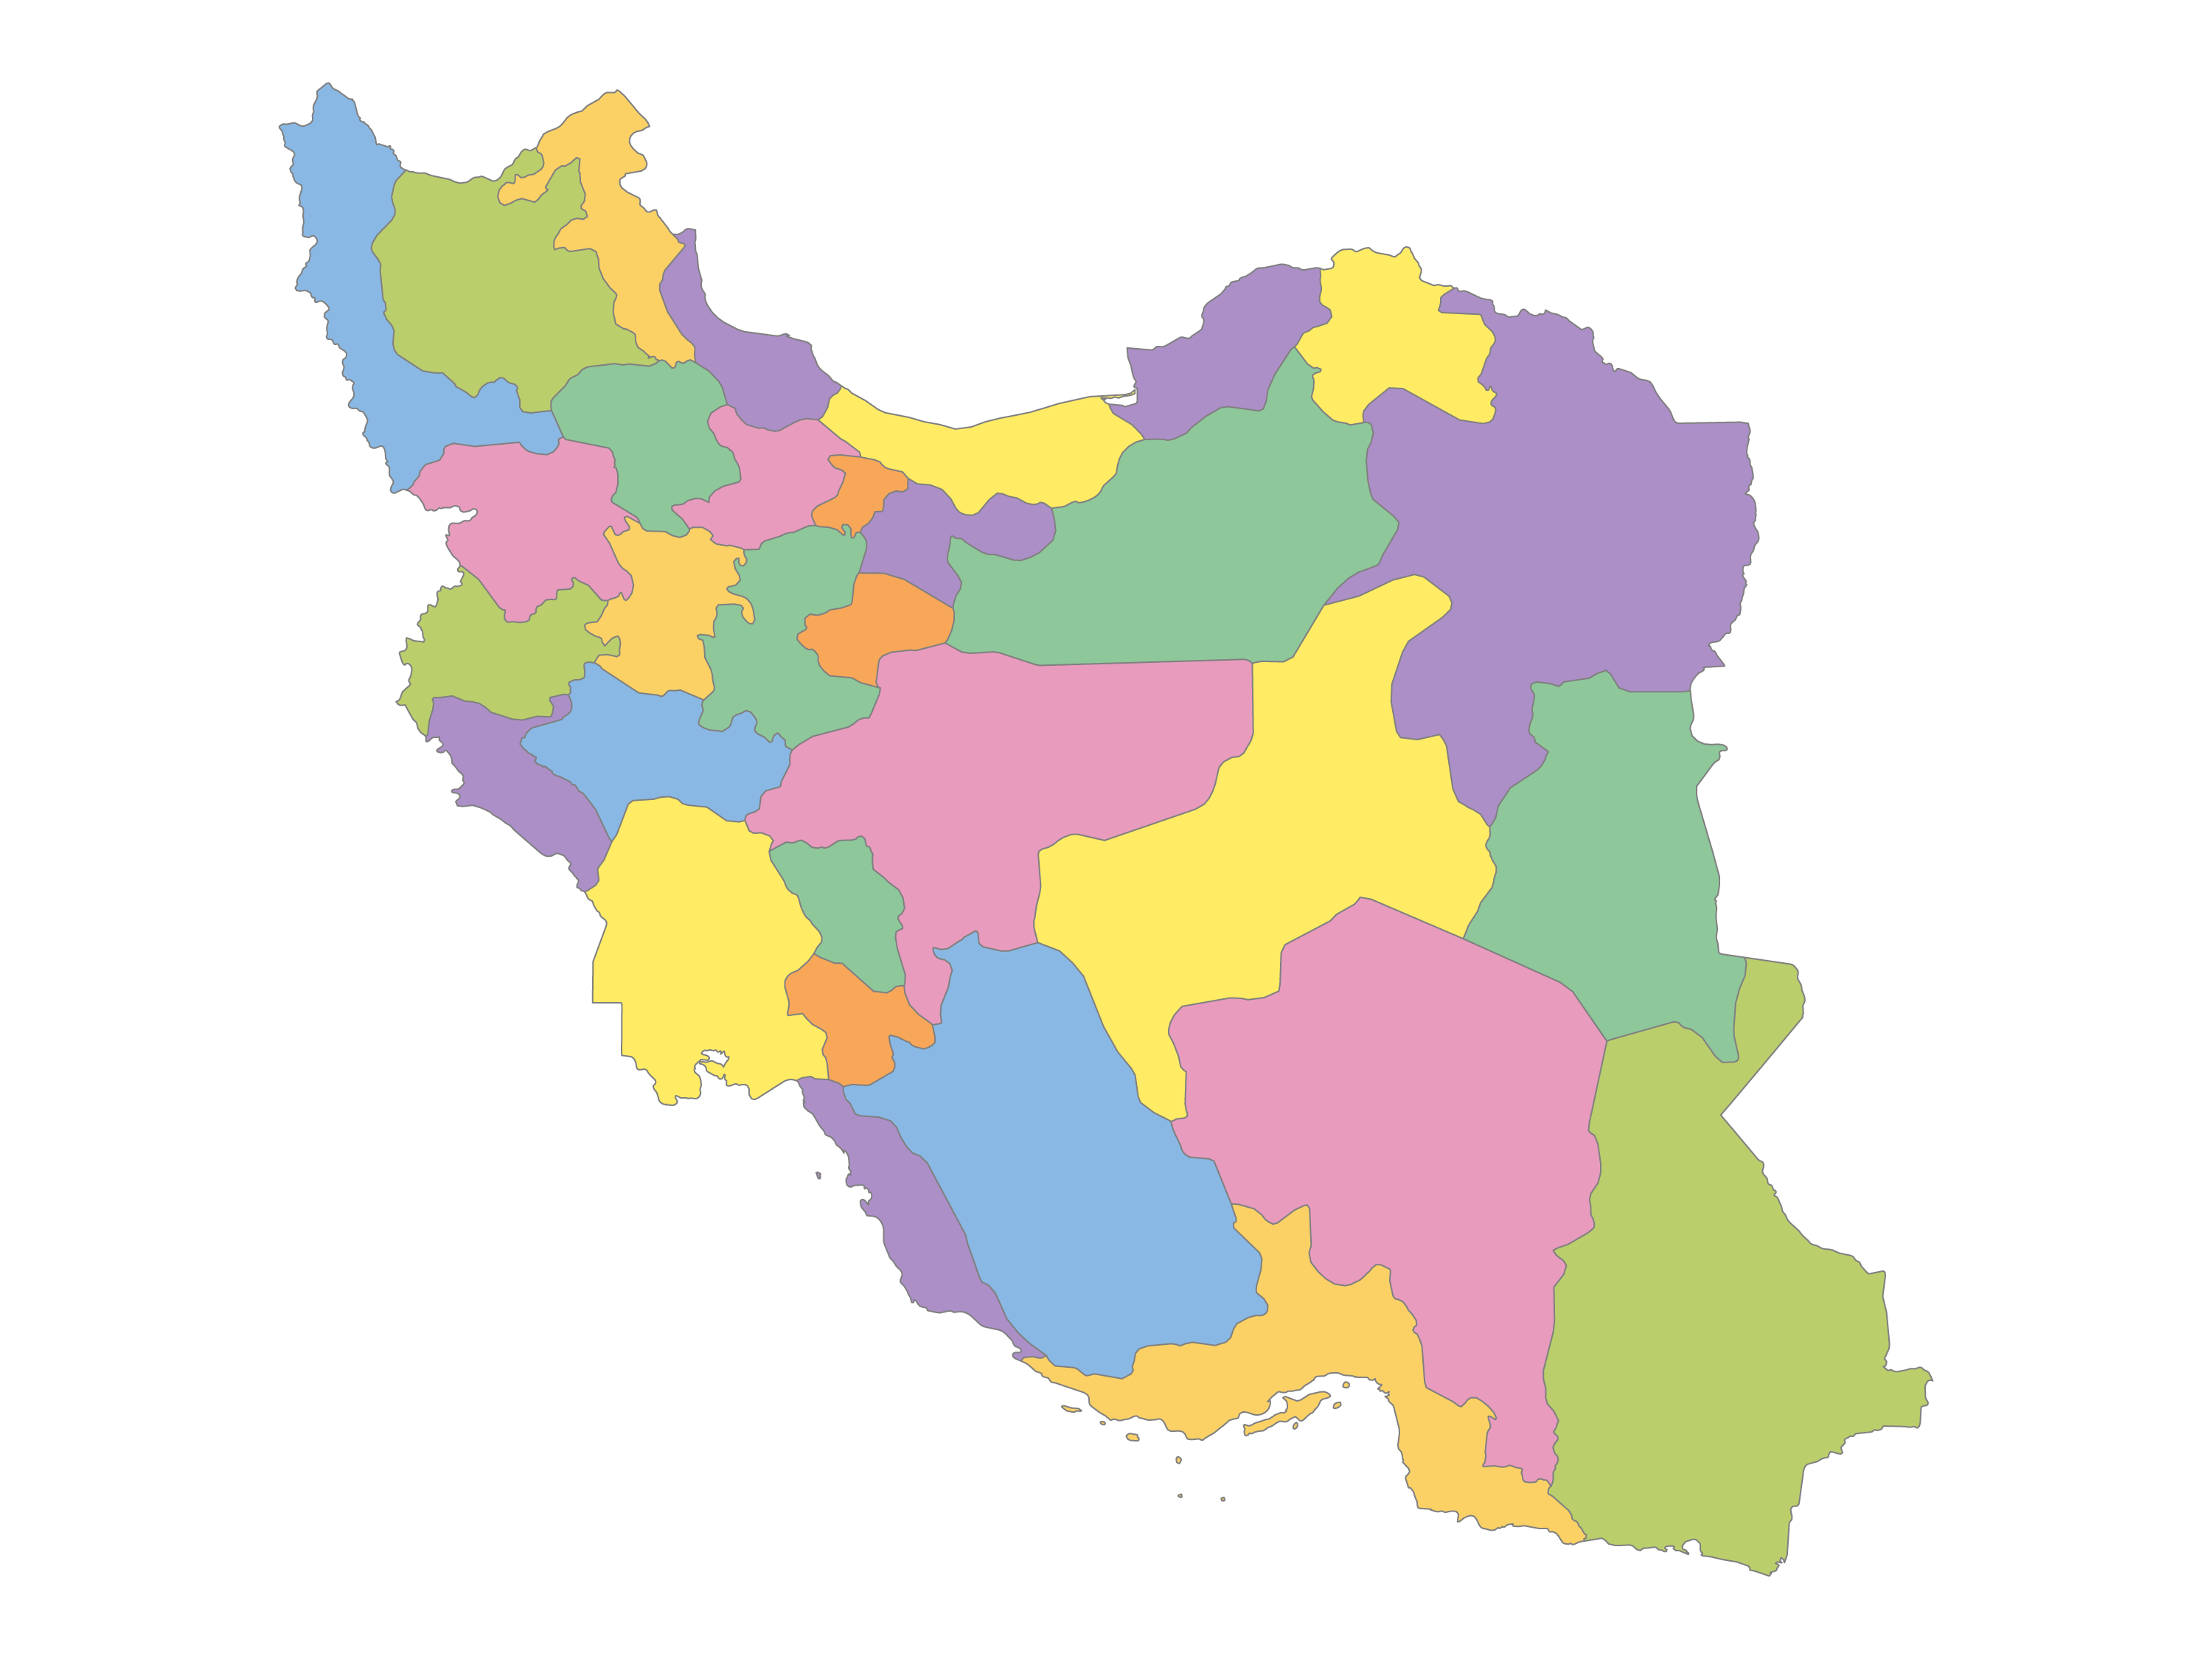 وکتور نقشه ایران ، جهان ، دنیا ، شهرها و راههای ایران با کیفیت بسیار بالا